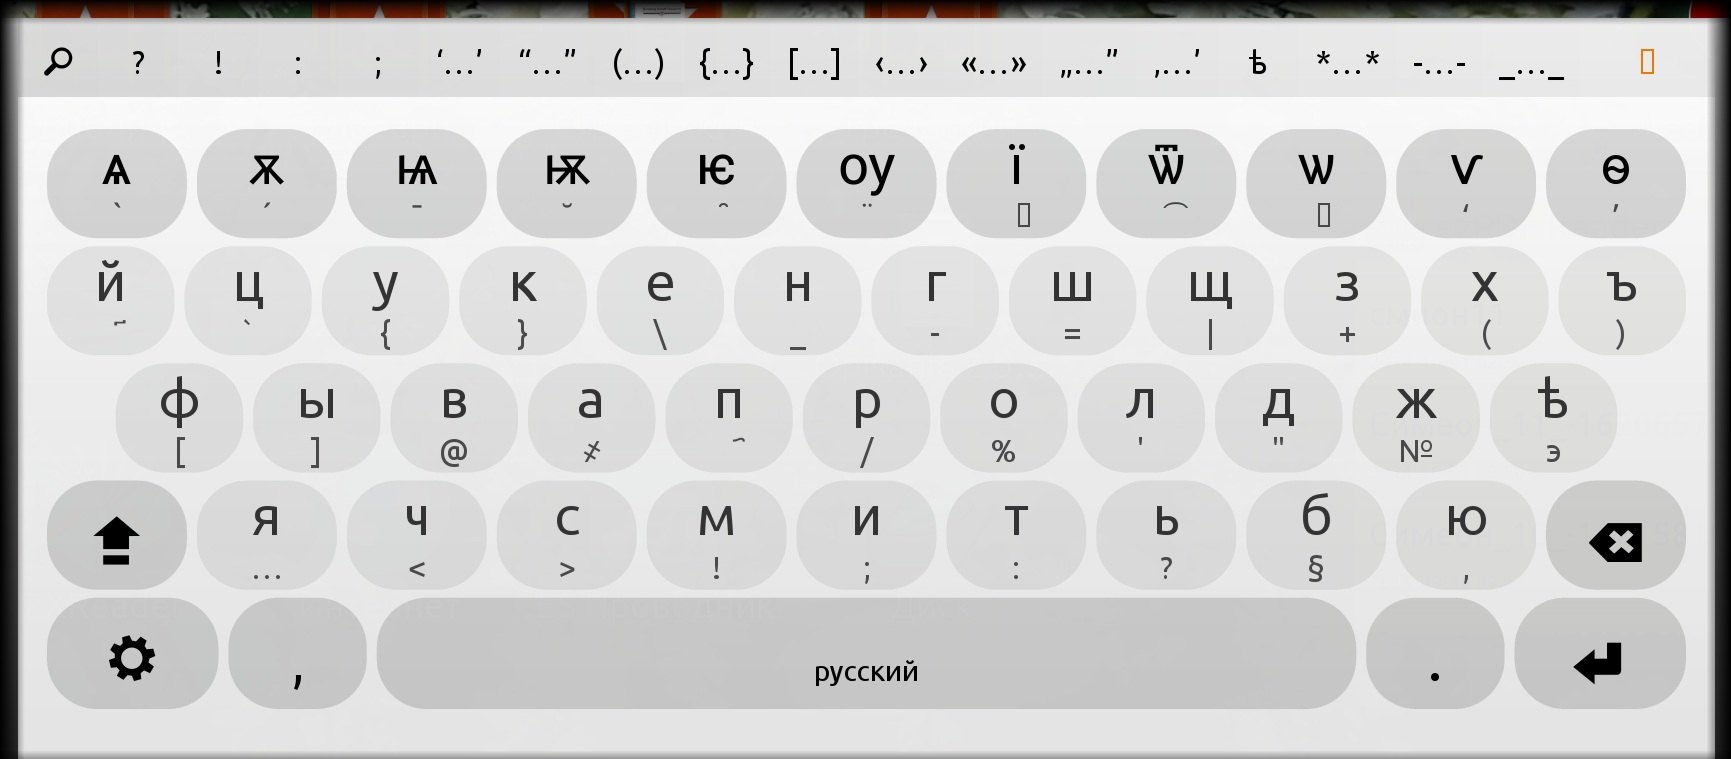 Старославянская раскладка клавиатуры для андроид